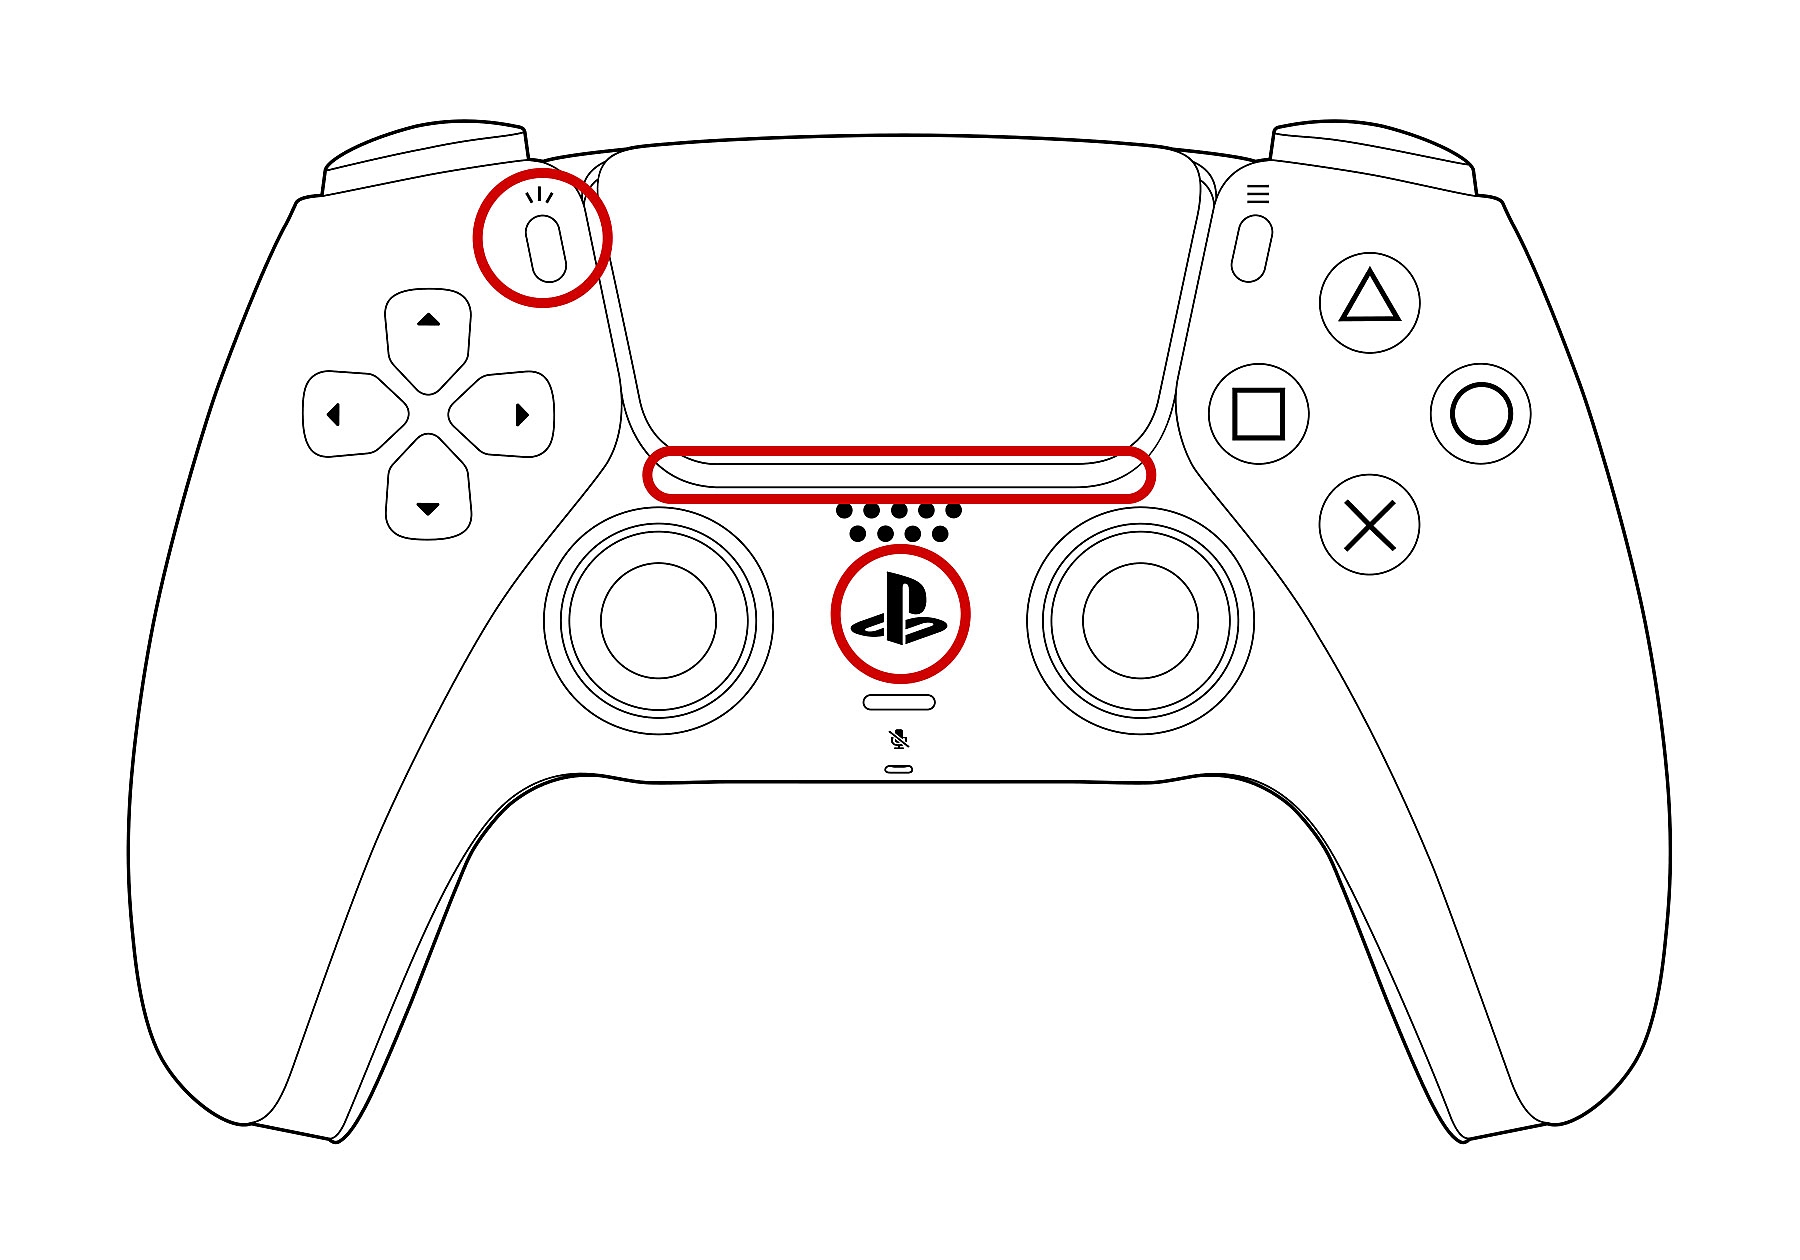 DualSense ワイヤレスコントローラーの正面図。インジケーターランプ、PSボタン、クリエイトボタンが丸で囲まれている。